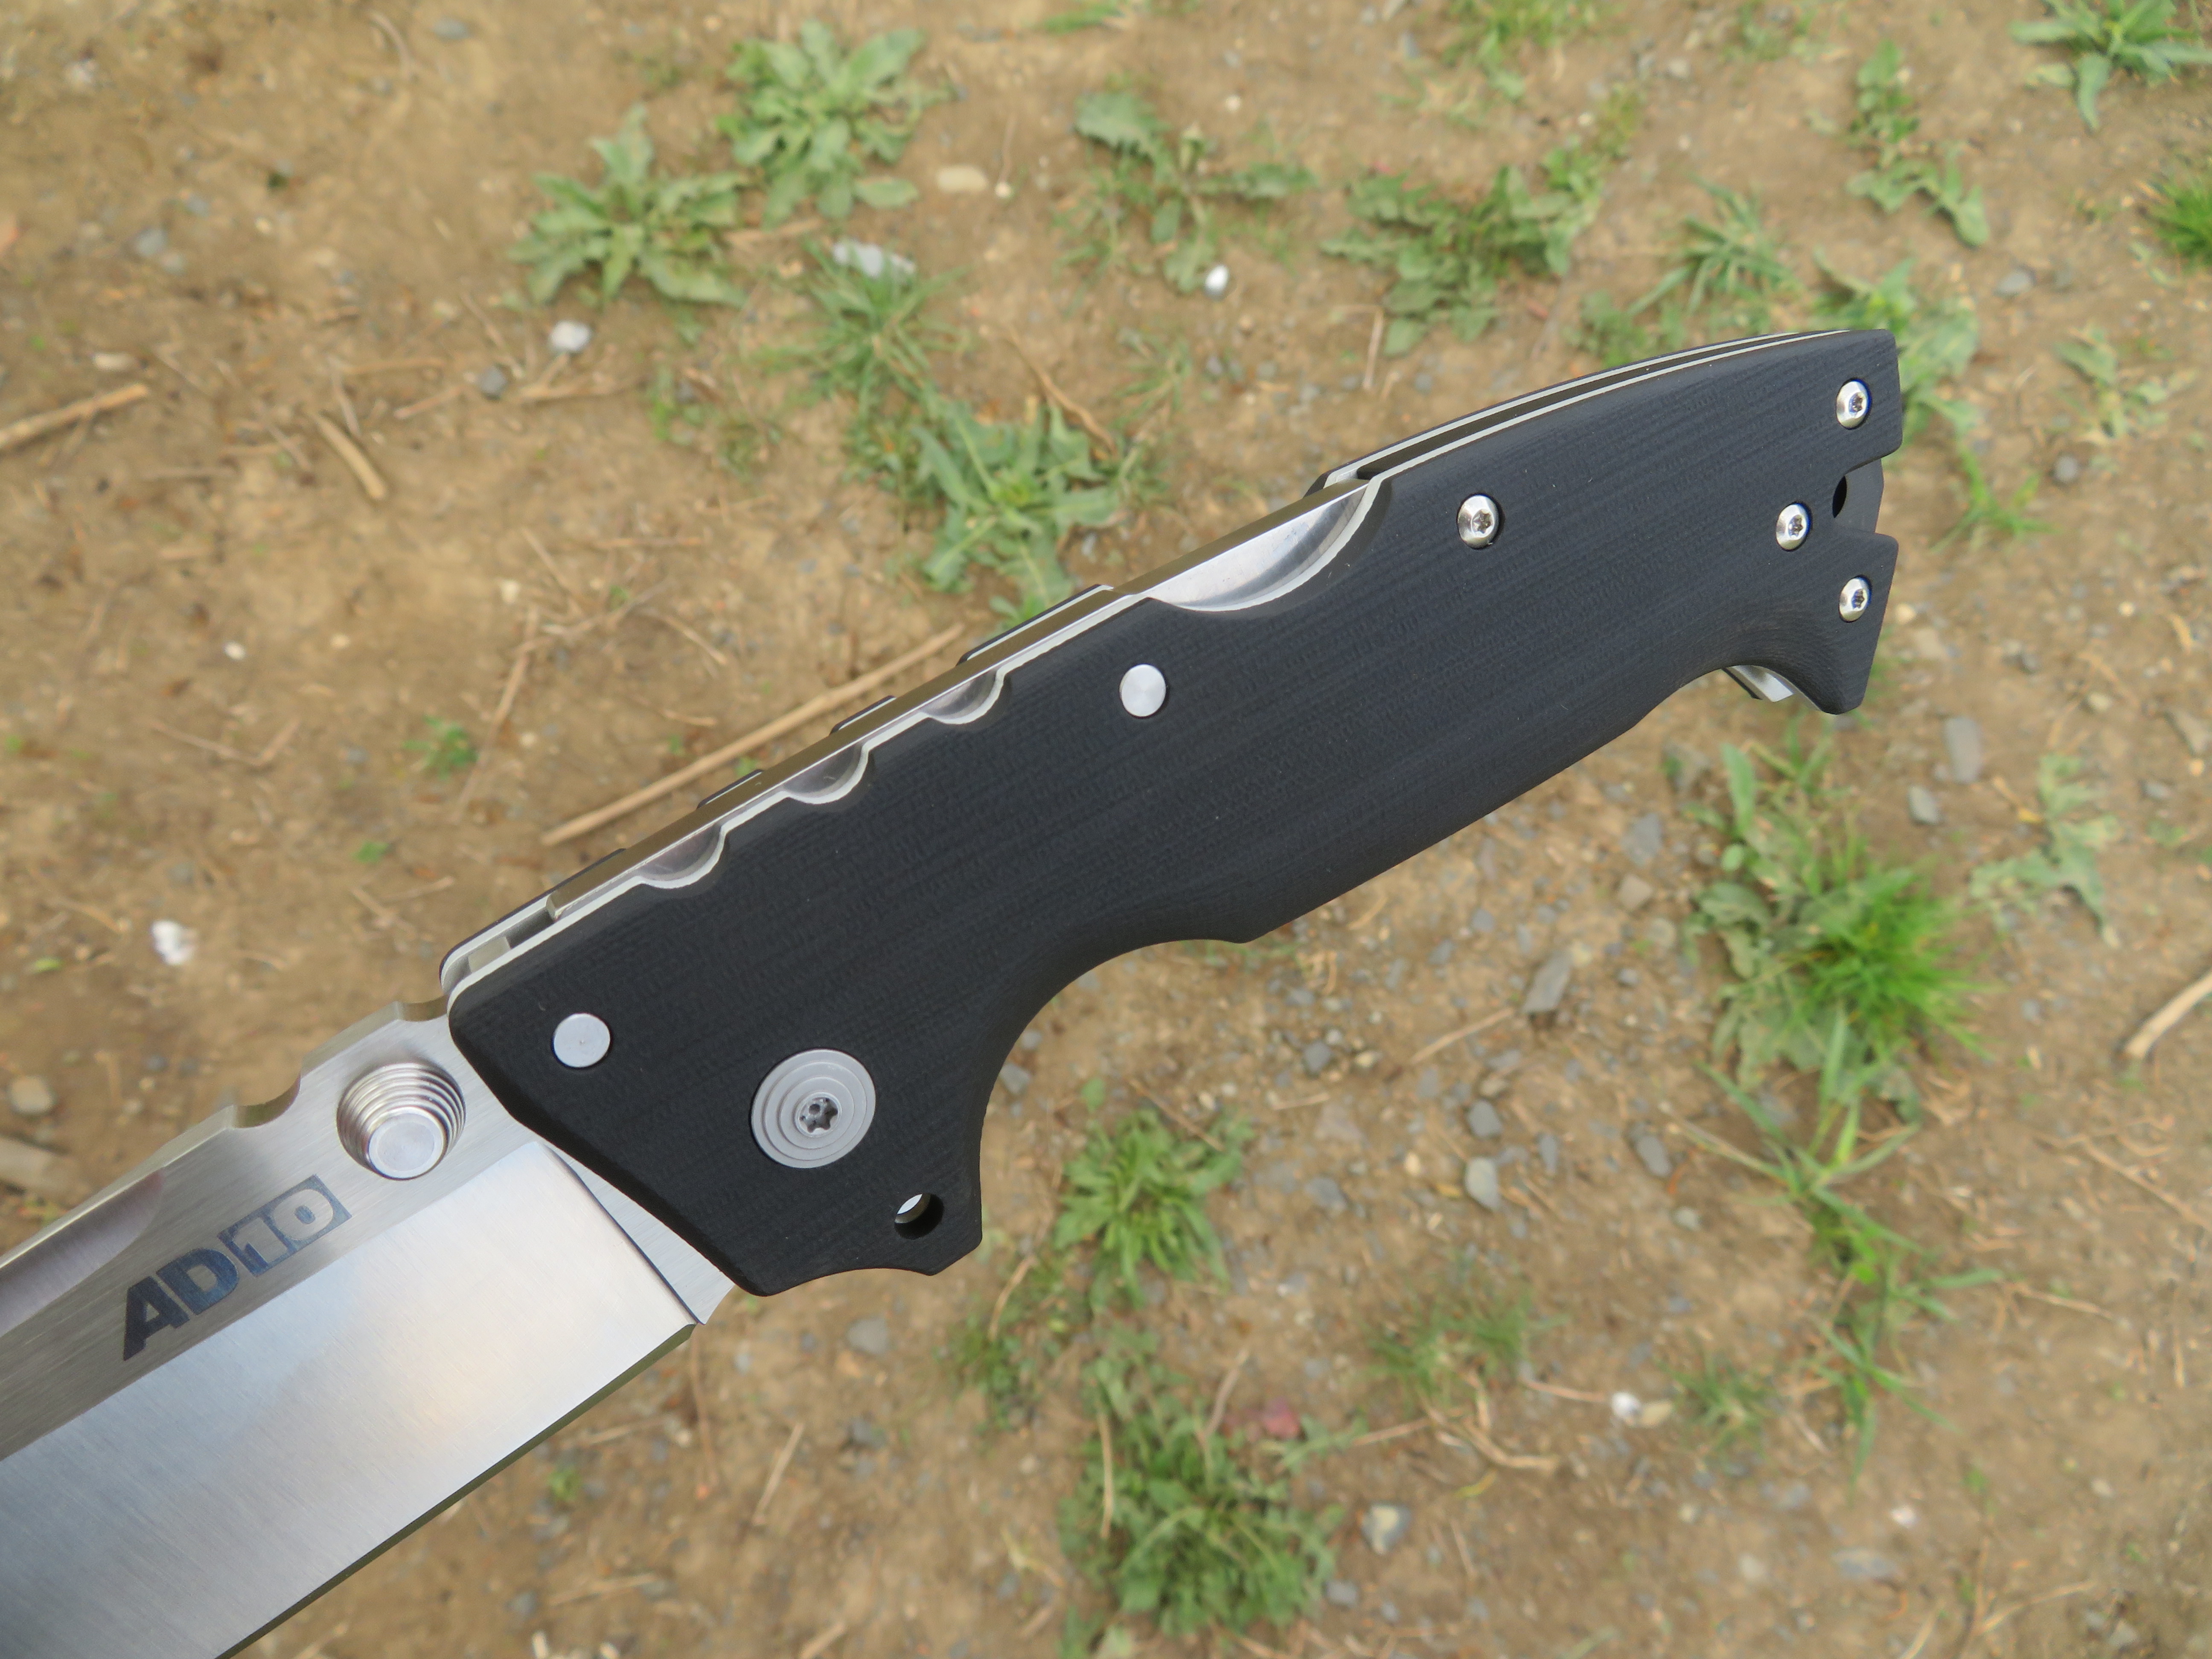 Rukojeť nože AD-10 od Cold Steelu je vyrobena z materiálu G-10.